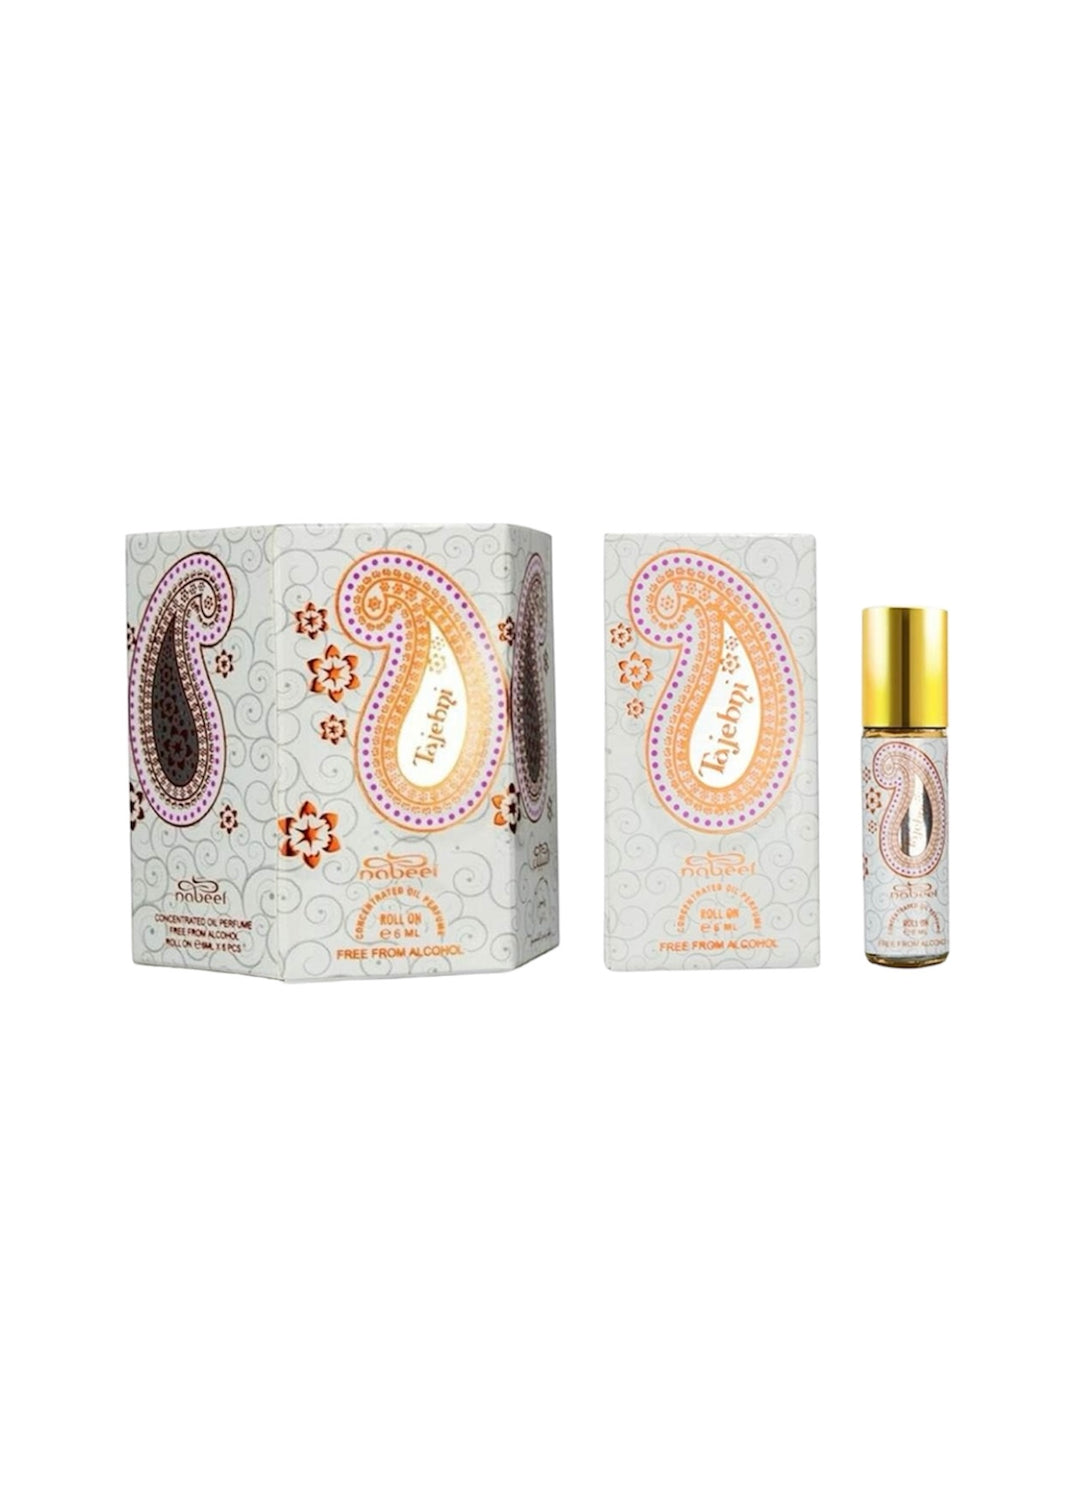 Tajebni - Box 6 X 6ml Roll-On Perfume Oil By Nabeel